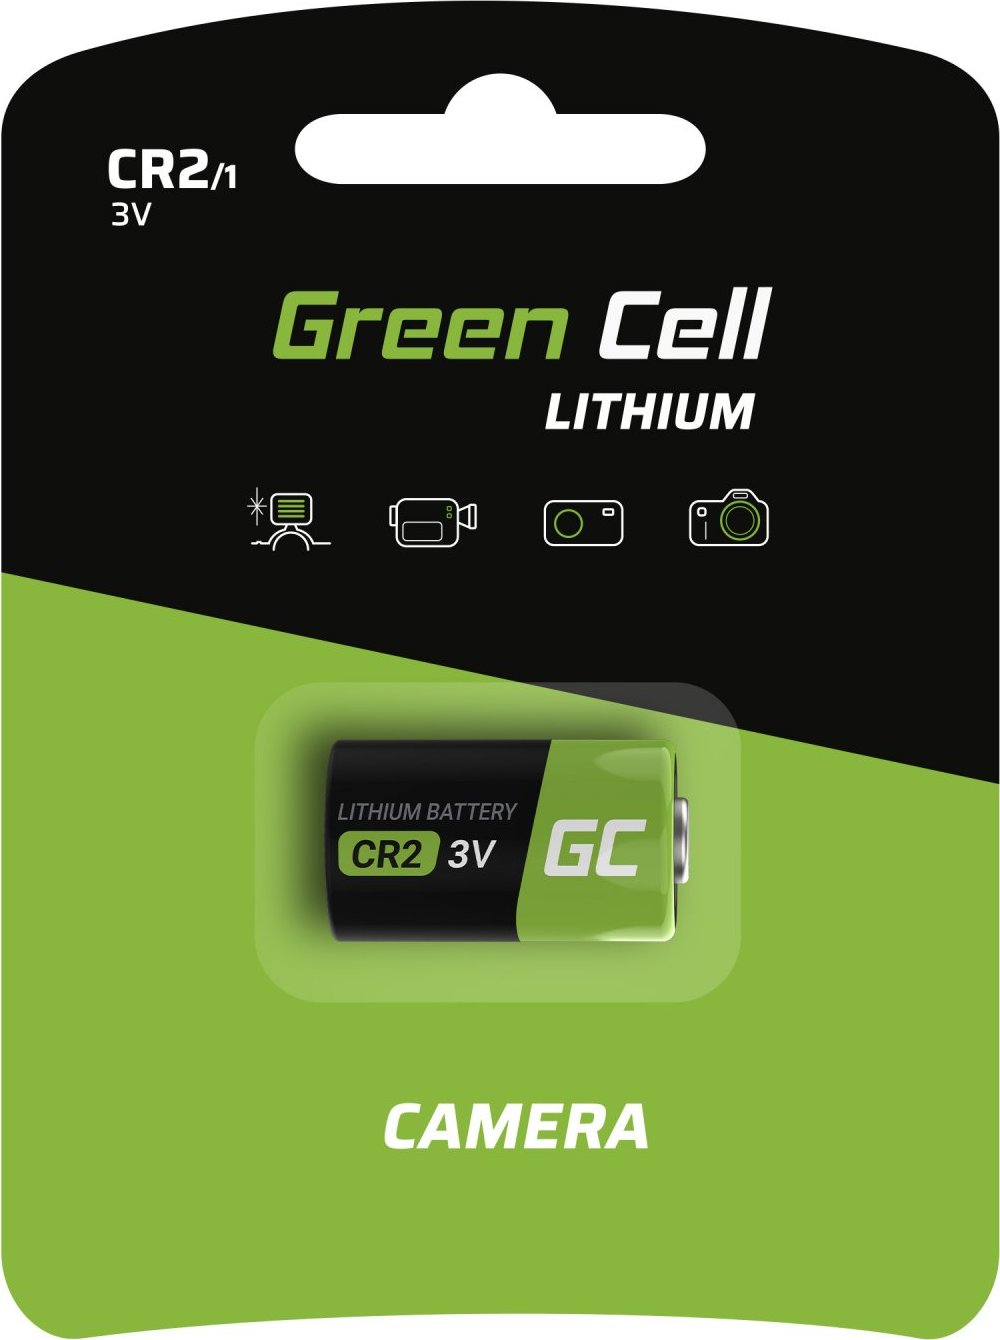 GREEN CELL Lithium Batéria CR2 3V 800mAh